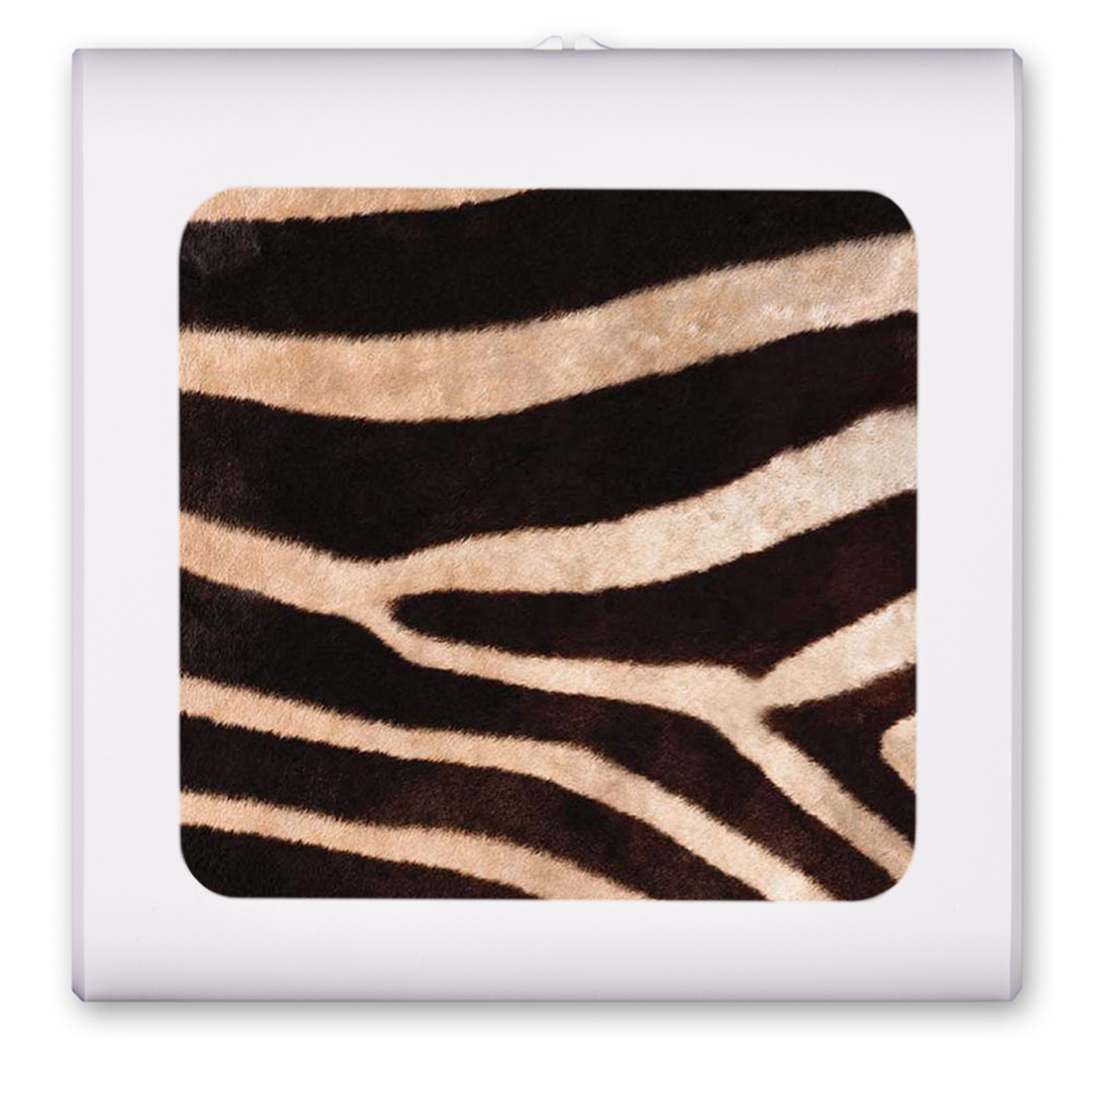 Faux Zebra Fur - #672